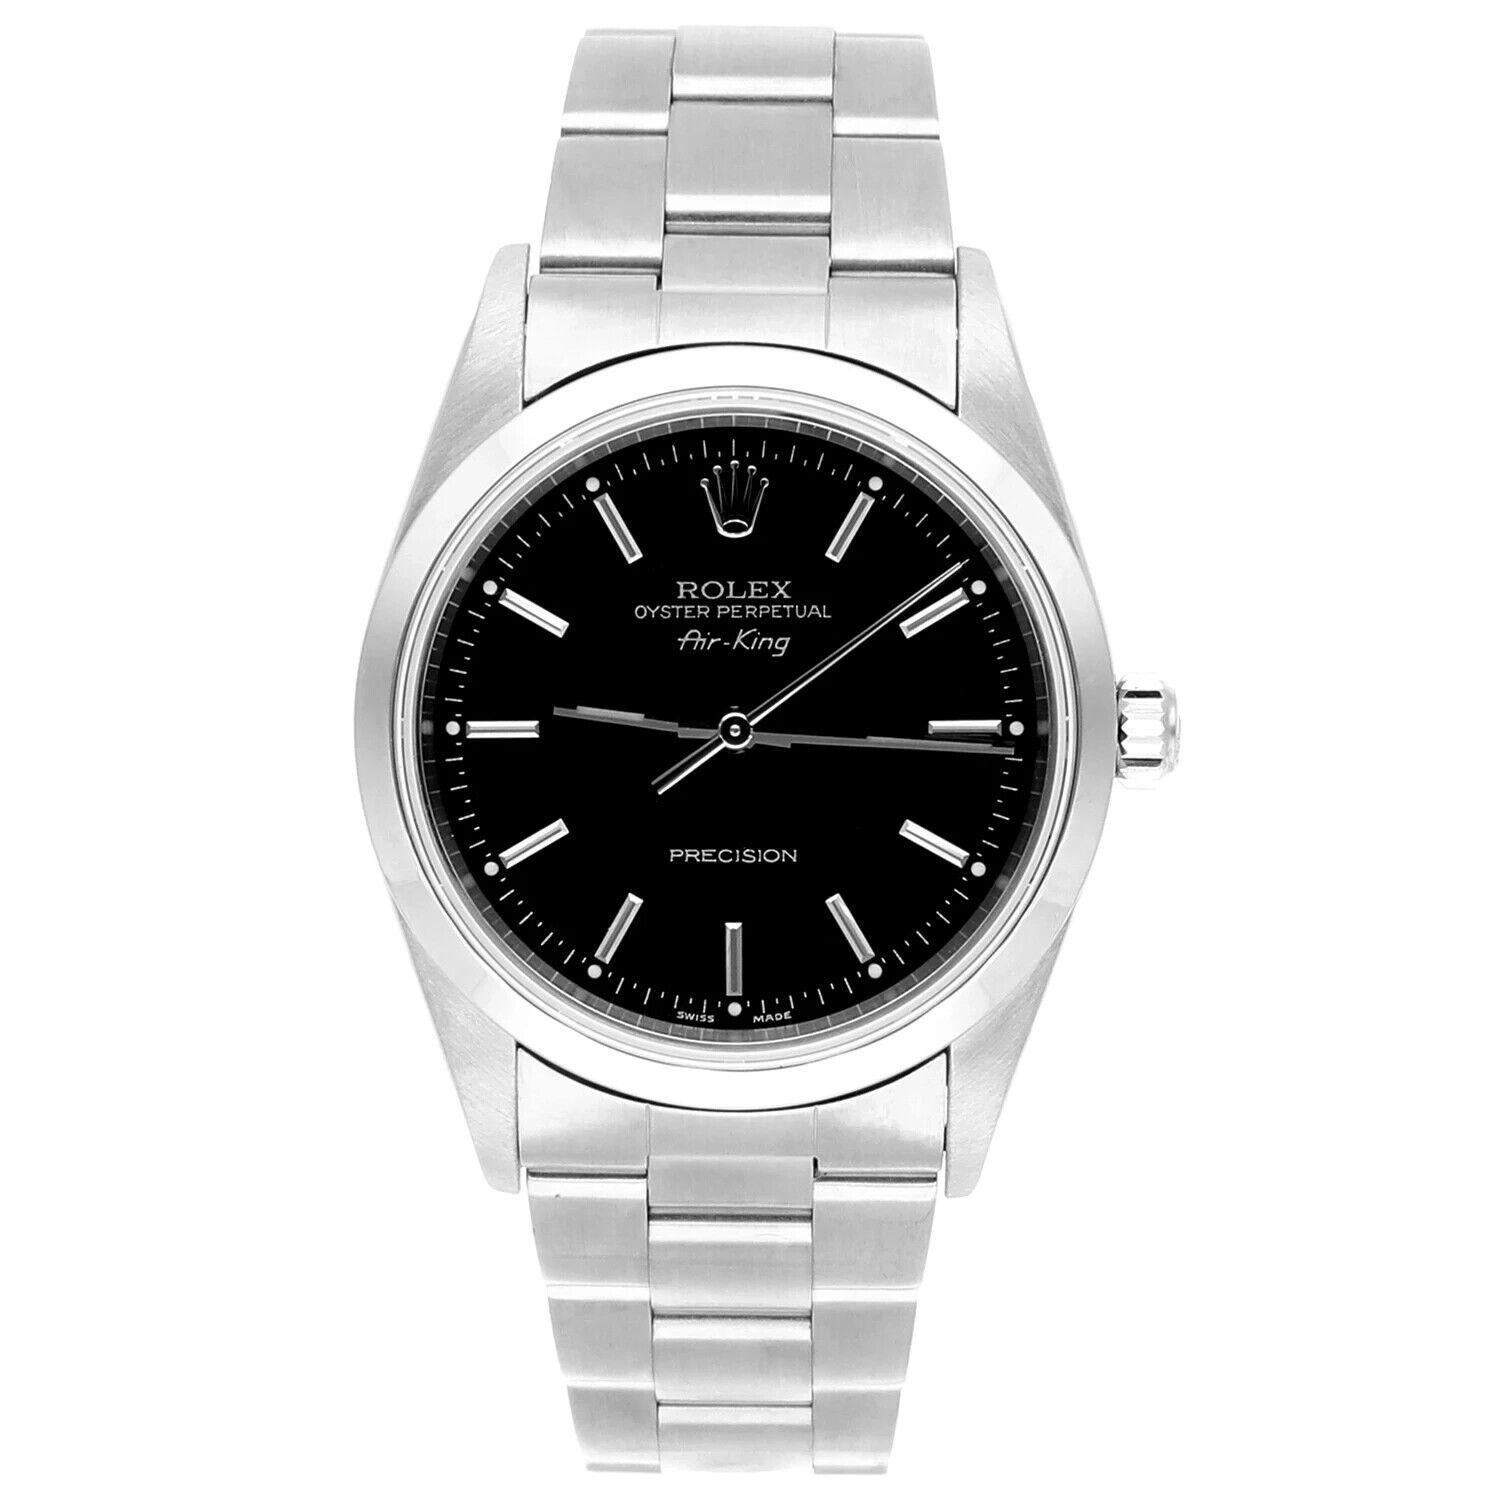 Rolex Air King 34mm Edelstahl Uhr Schwarzes Zifferblatt Glatte Lünette Unisex Uhr 14000, CIRCA 2000. Diese Uhr wurde professionell poliert und gewartet und befindet sich in einem ausgezeichneten Gesamtzustand. Es gibt absolut keine sichtbaren